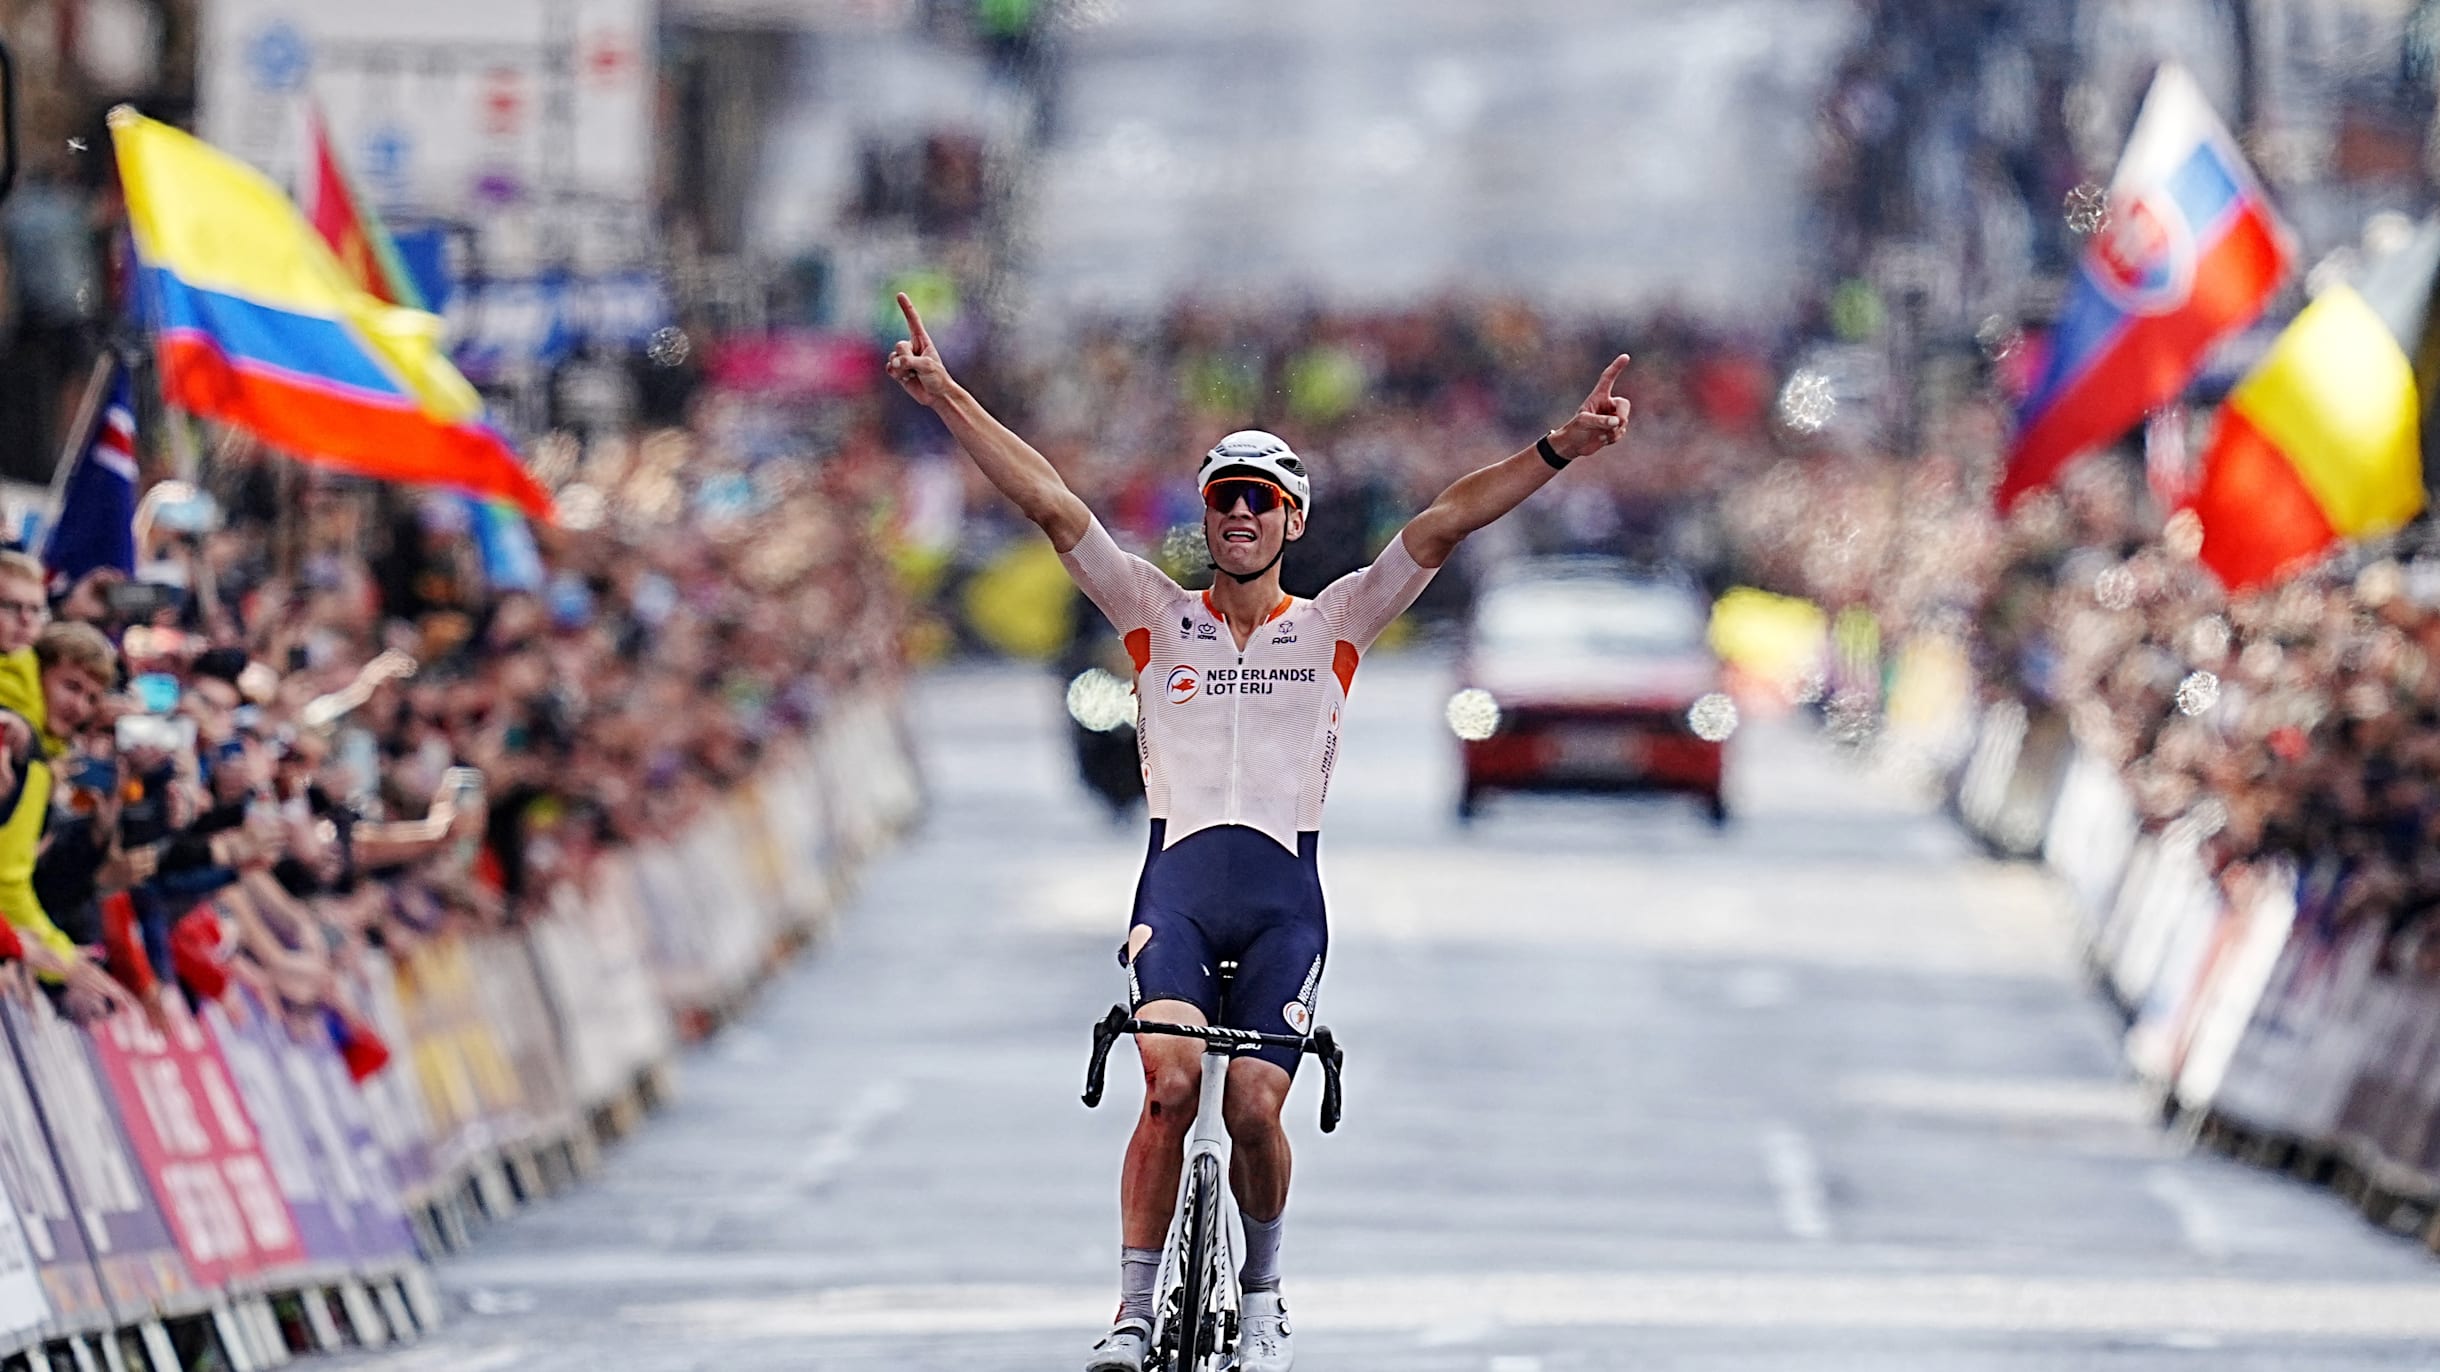 2023 Pro Cycling World Champion Jersey Revealed